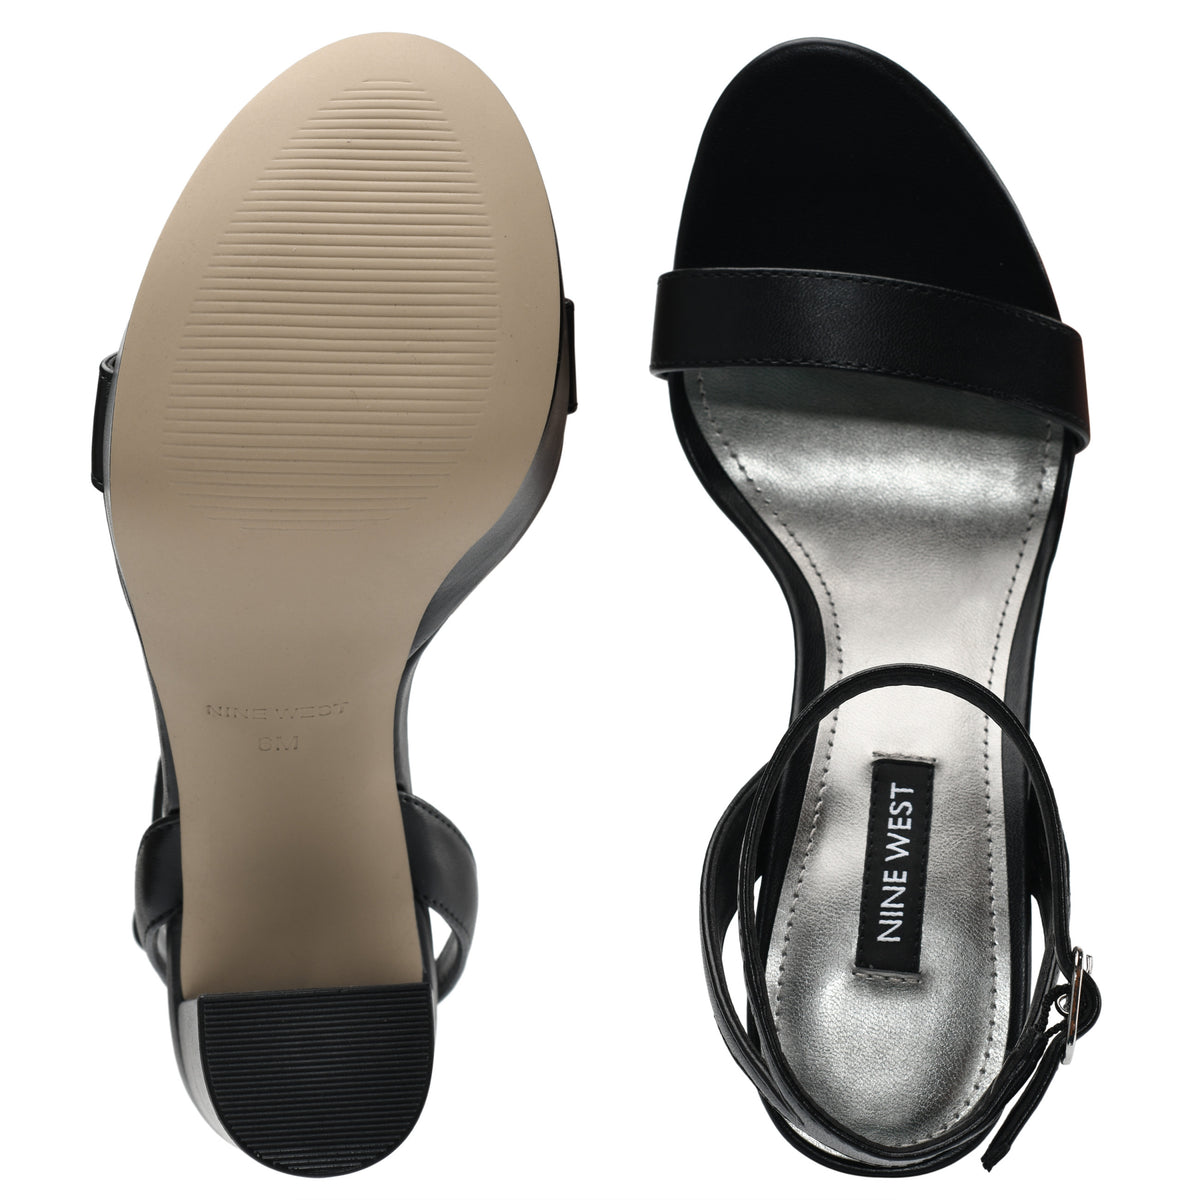 Uknow Platform Dress Sandals